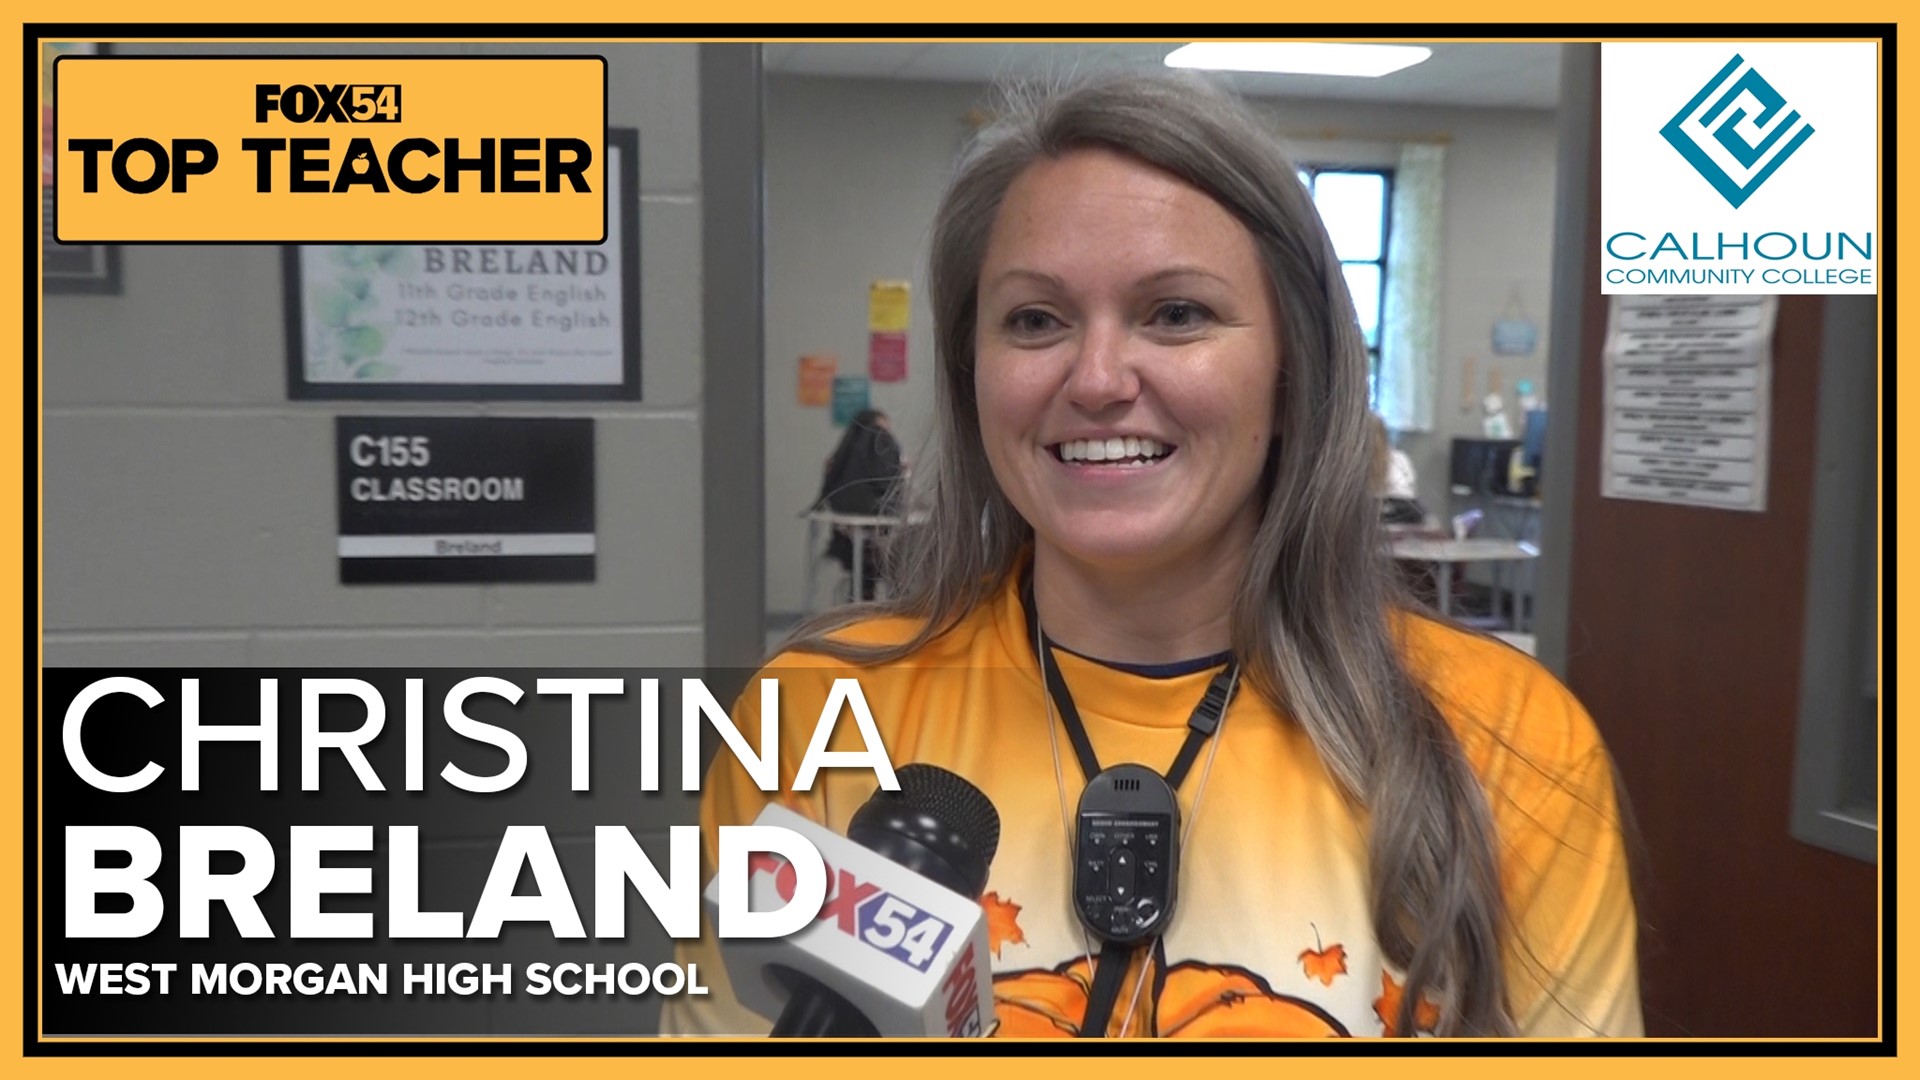 Meet FOX54 Top Teacher Christina Breland of West Morgan High School!